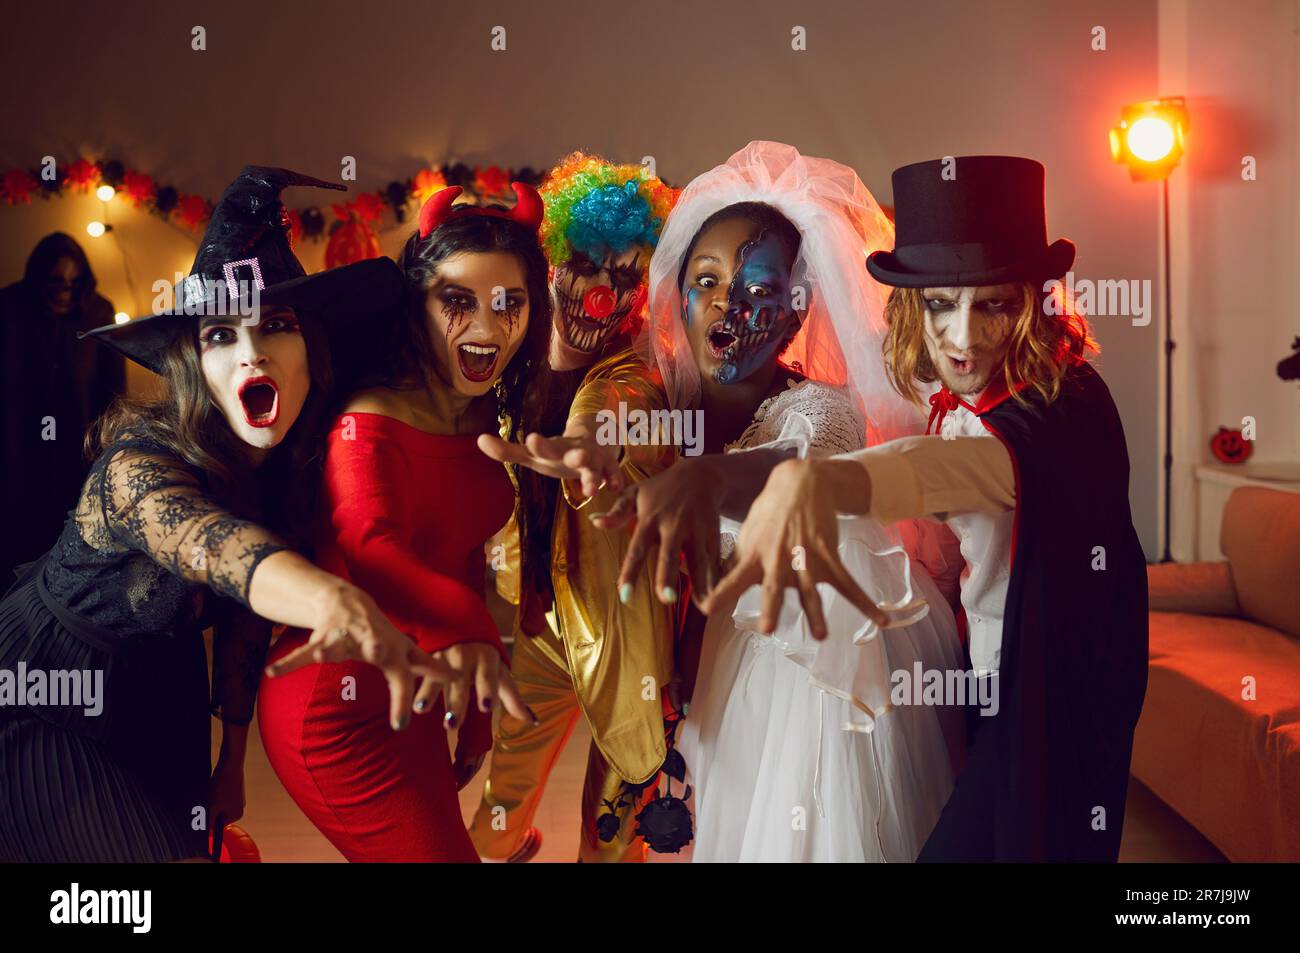 Gruppenporträt von jungen Freunden in gruseligen Halloween-Kostümen, in denen "BUH alle zusammen" steht Stockfoto